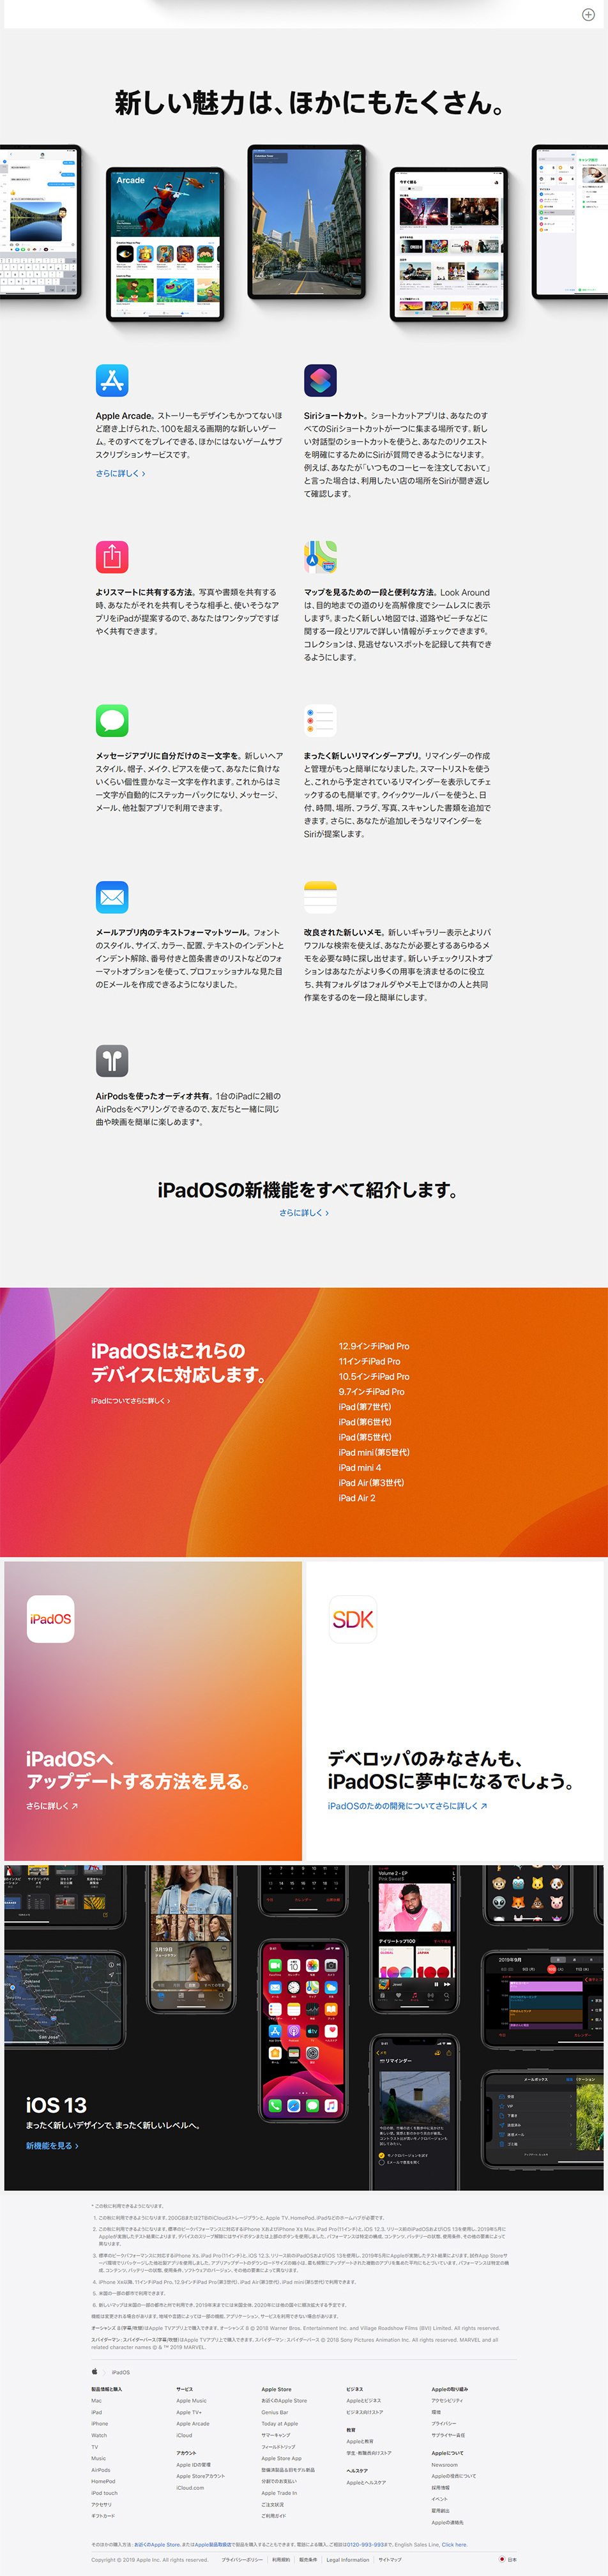 iPadOS_pc_2